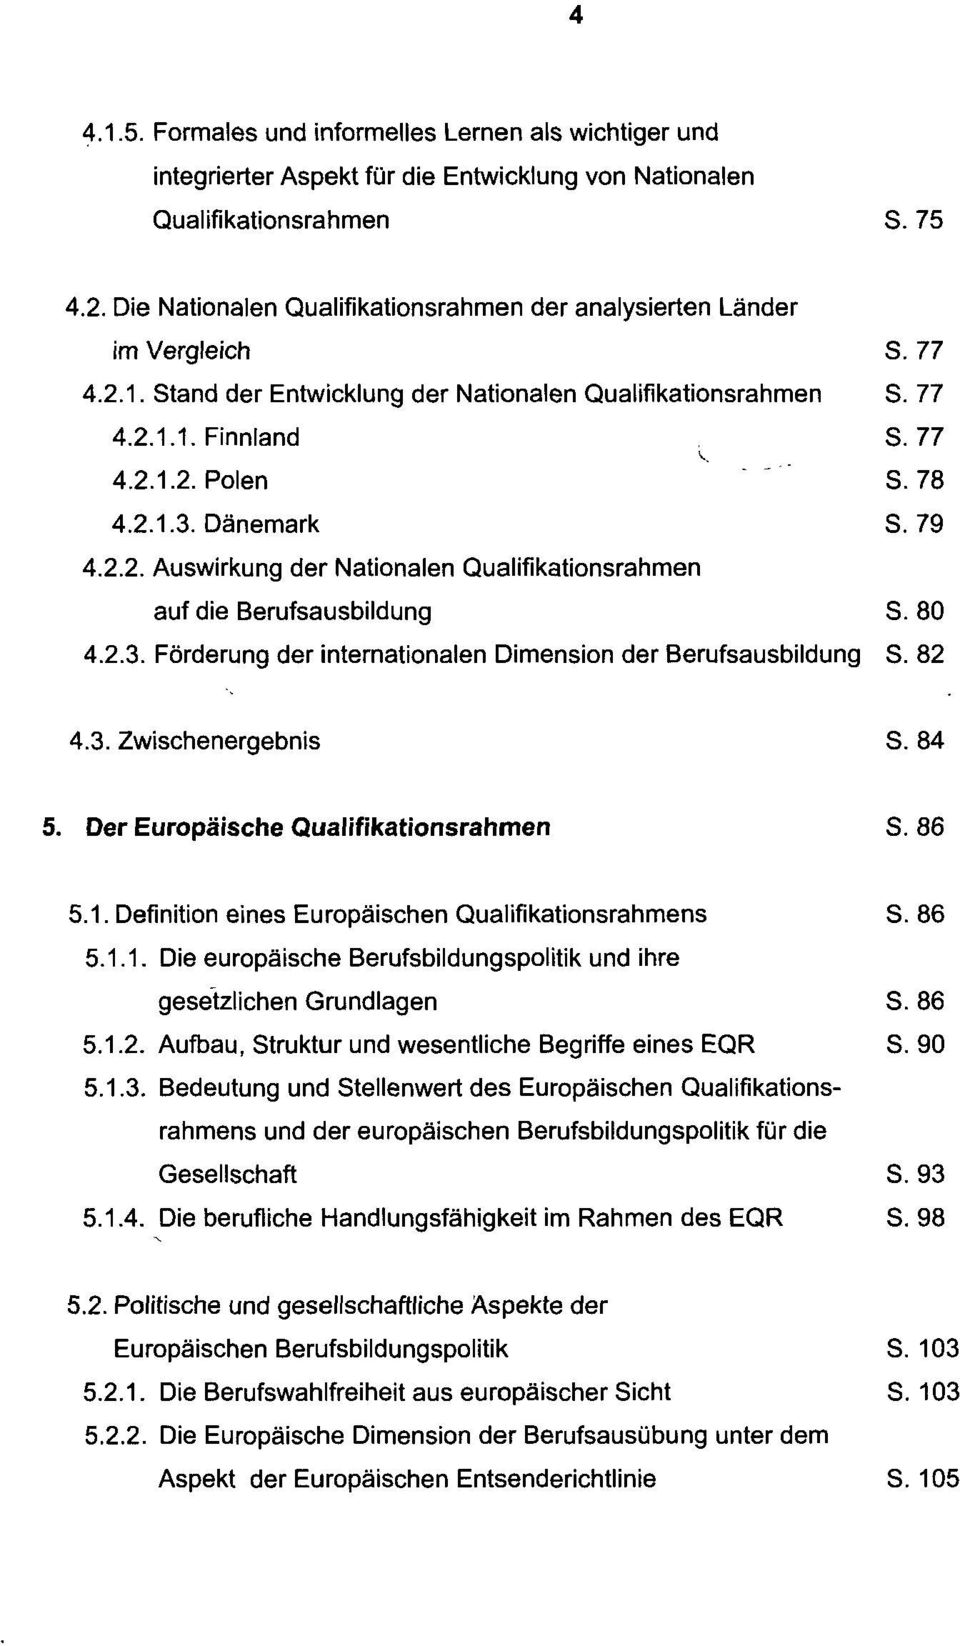 78 4.2.1.3. Dänemark S. 79 4.2.2. Auswirkung der Nationalen Qualifikationsrahmen auf die Berufsausbildung S. 80 4.2.3. Förderung der internationalen Dimension der Berufsausbildung S. 82 4.3. Zwischenergebnis S.